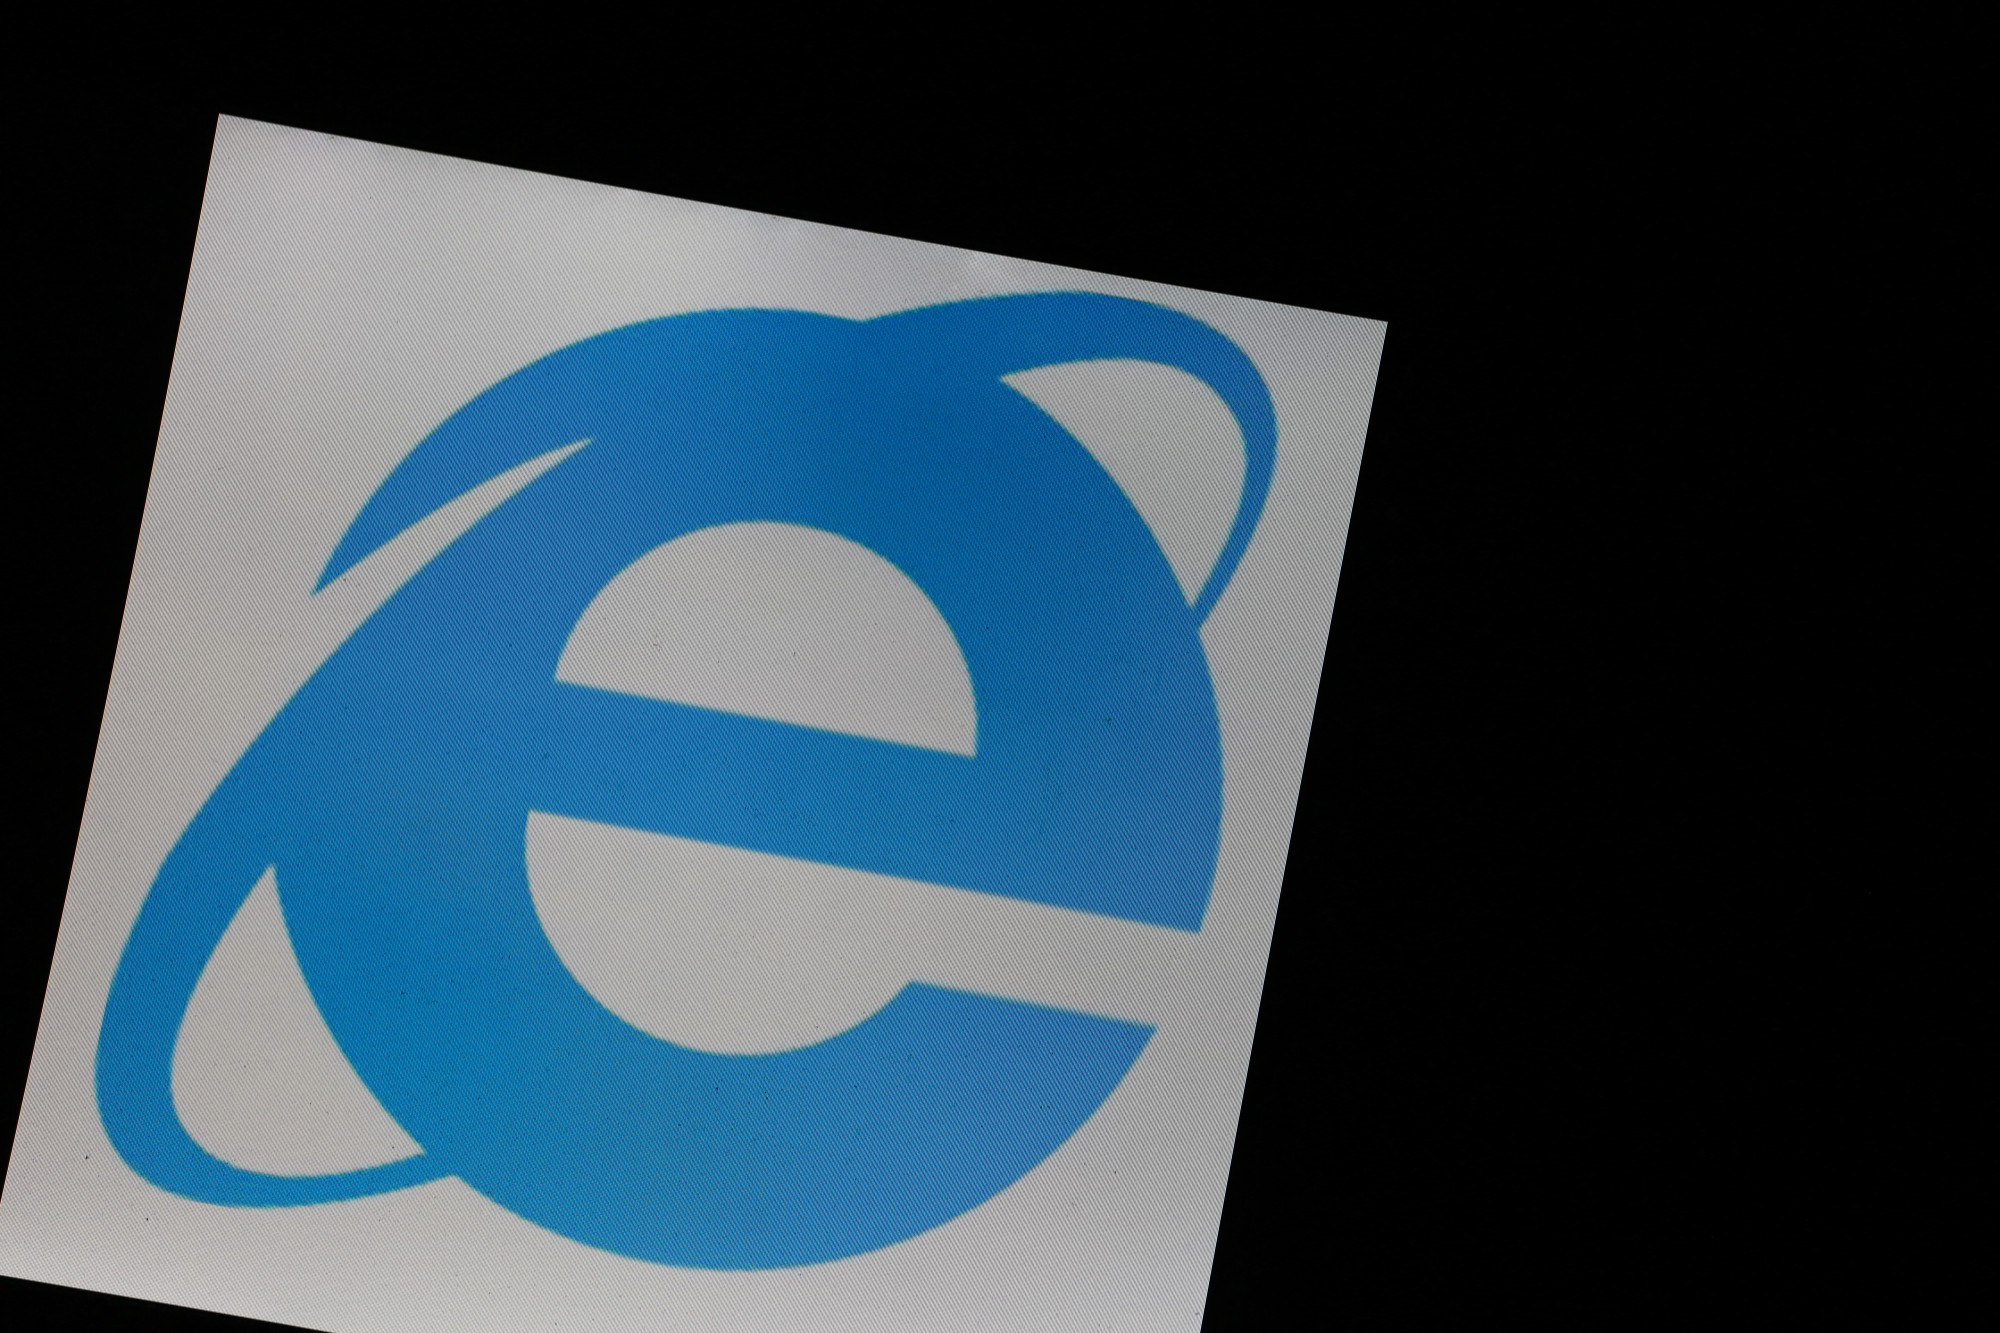 Vége az Internet Explorernek, élt 27 évet